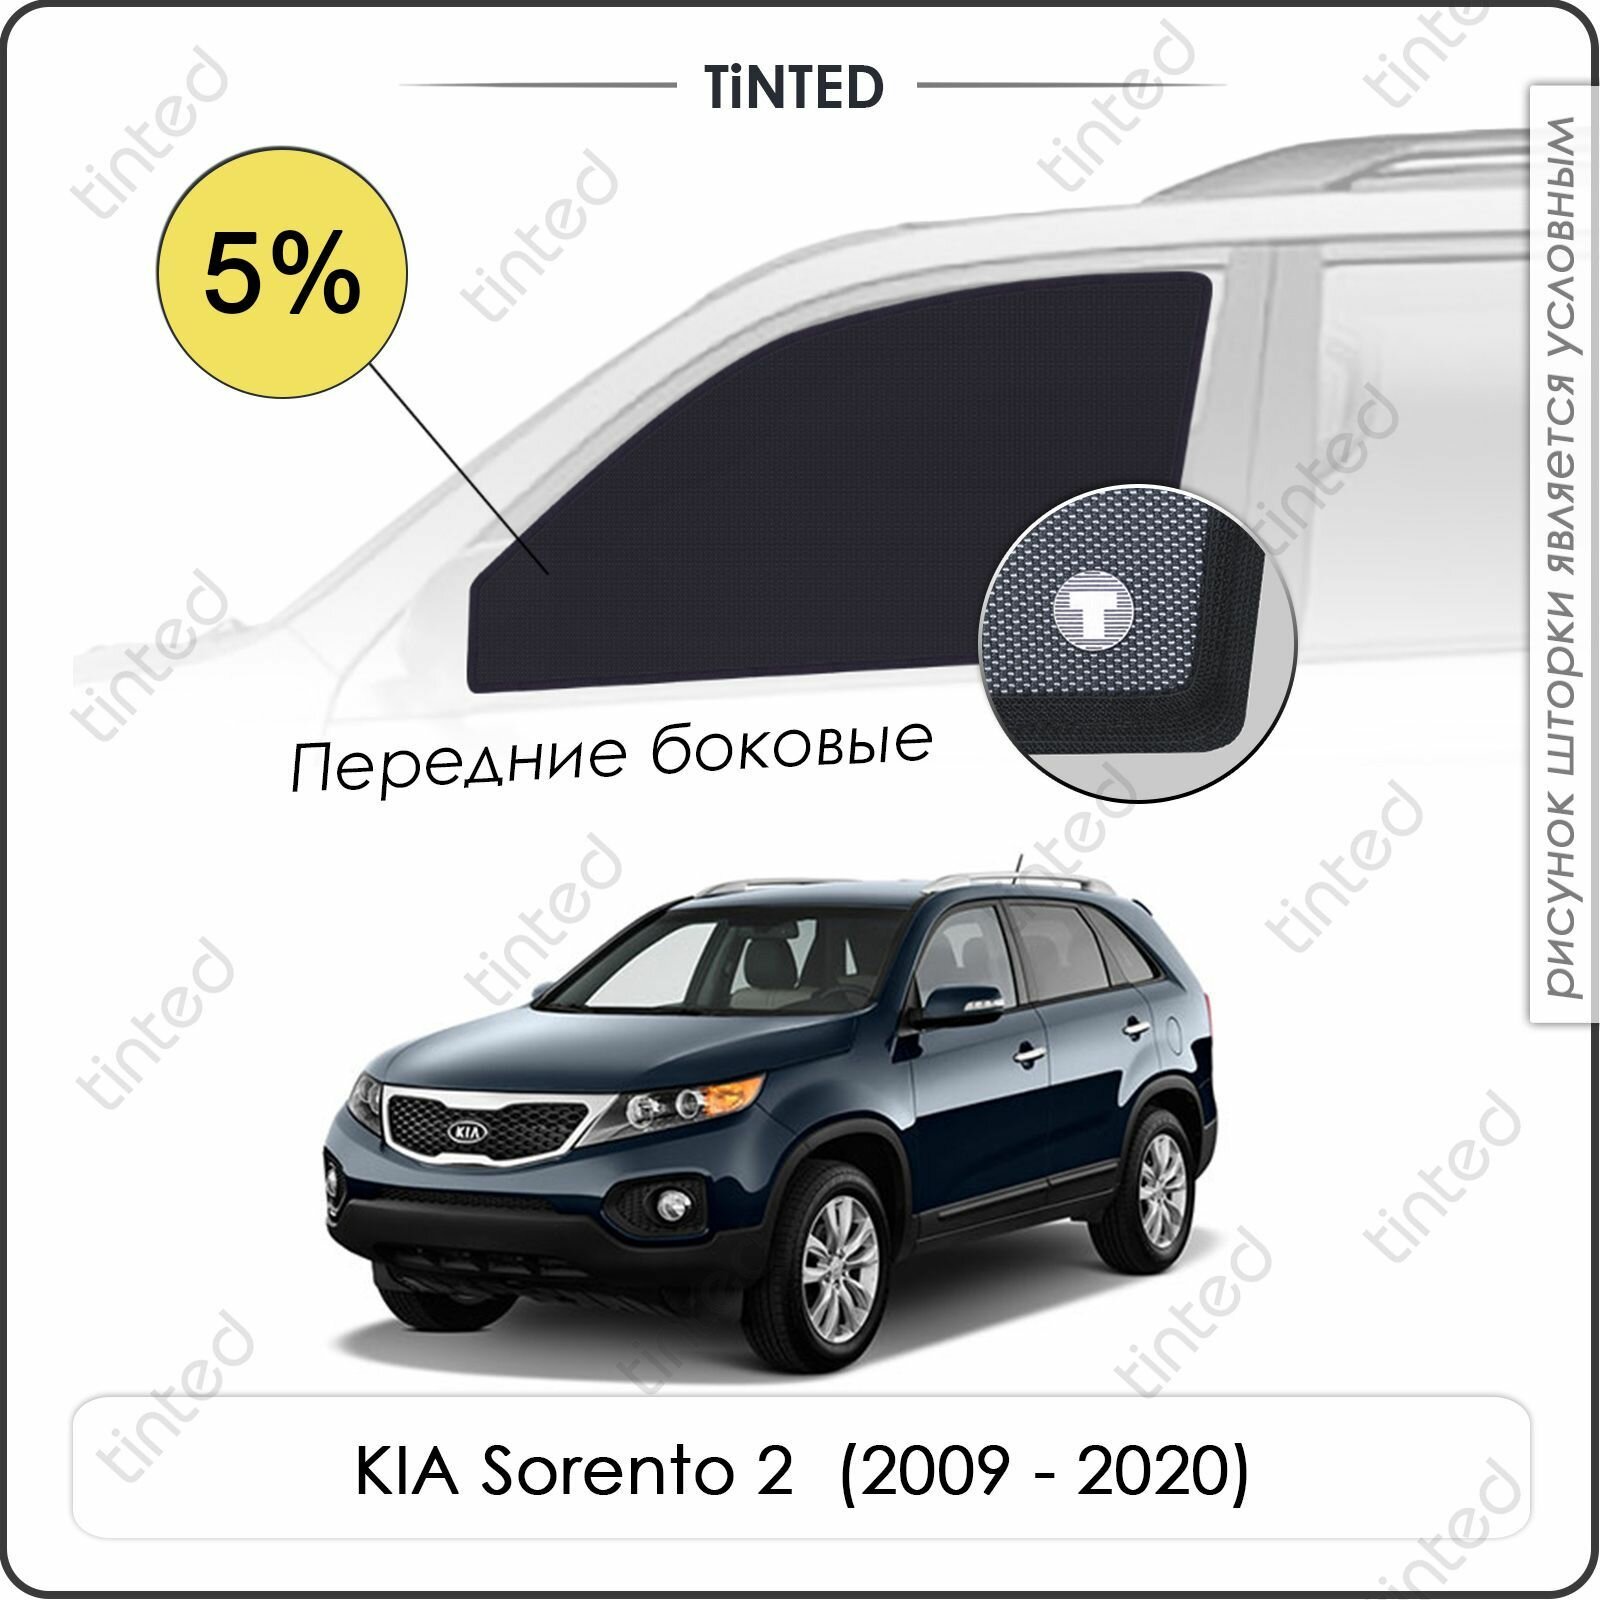 Шторки на автомобиль солнцезащитные KIA Sorento 2 Кроссовер 5дв. (2009 - 2021) на передние двери 5%, сетки от солнца в машину КИА соренто, Каркасные автошторки Premium